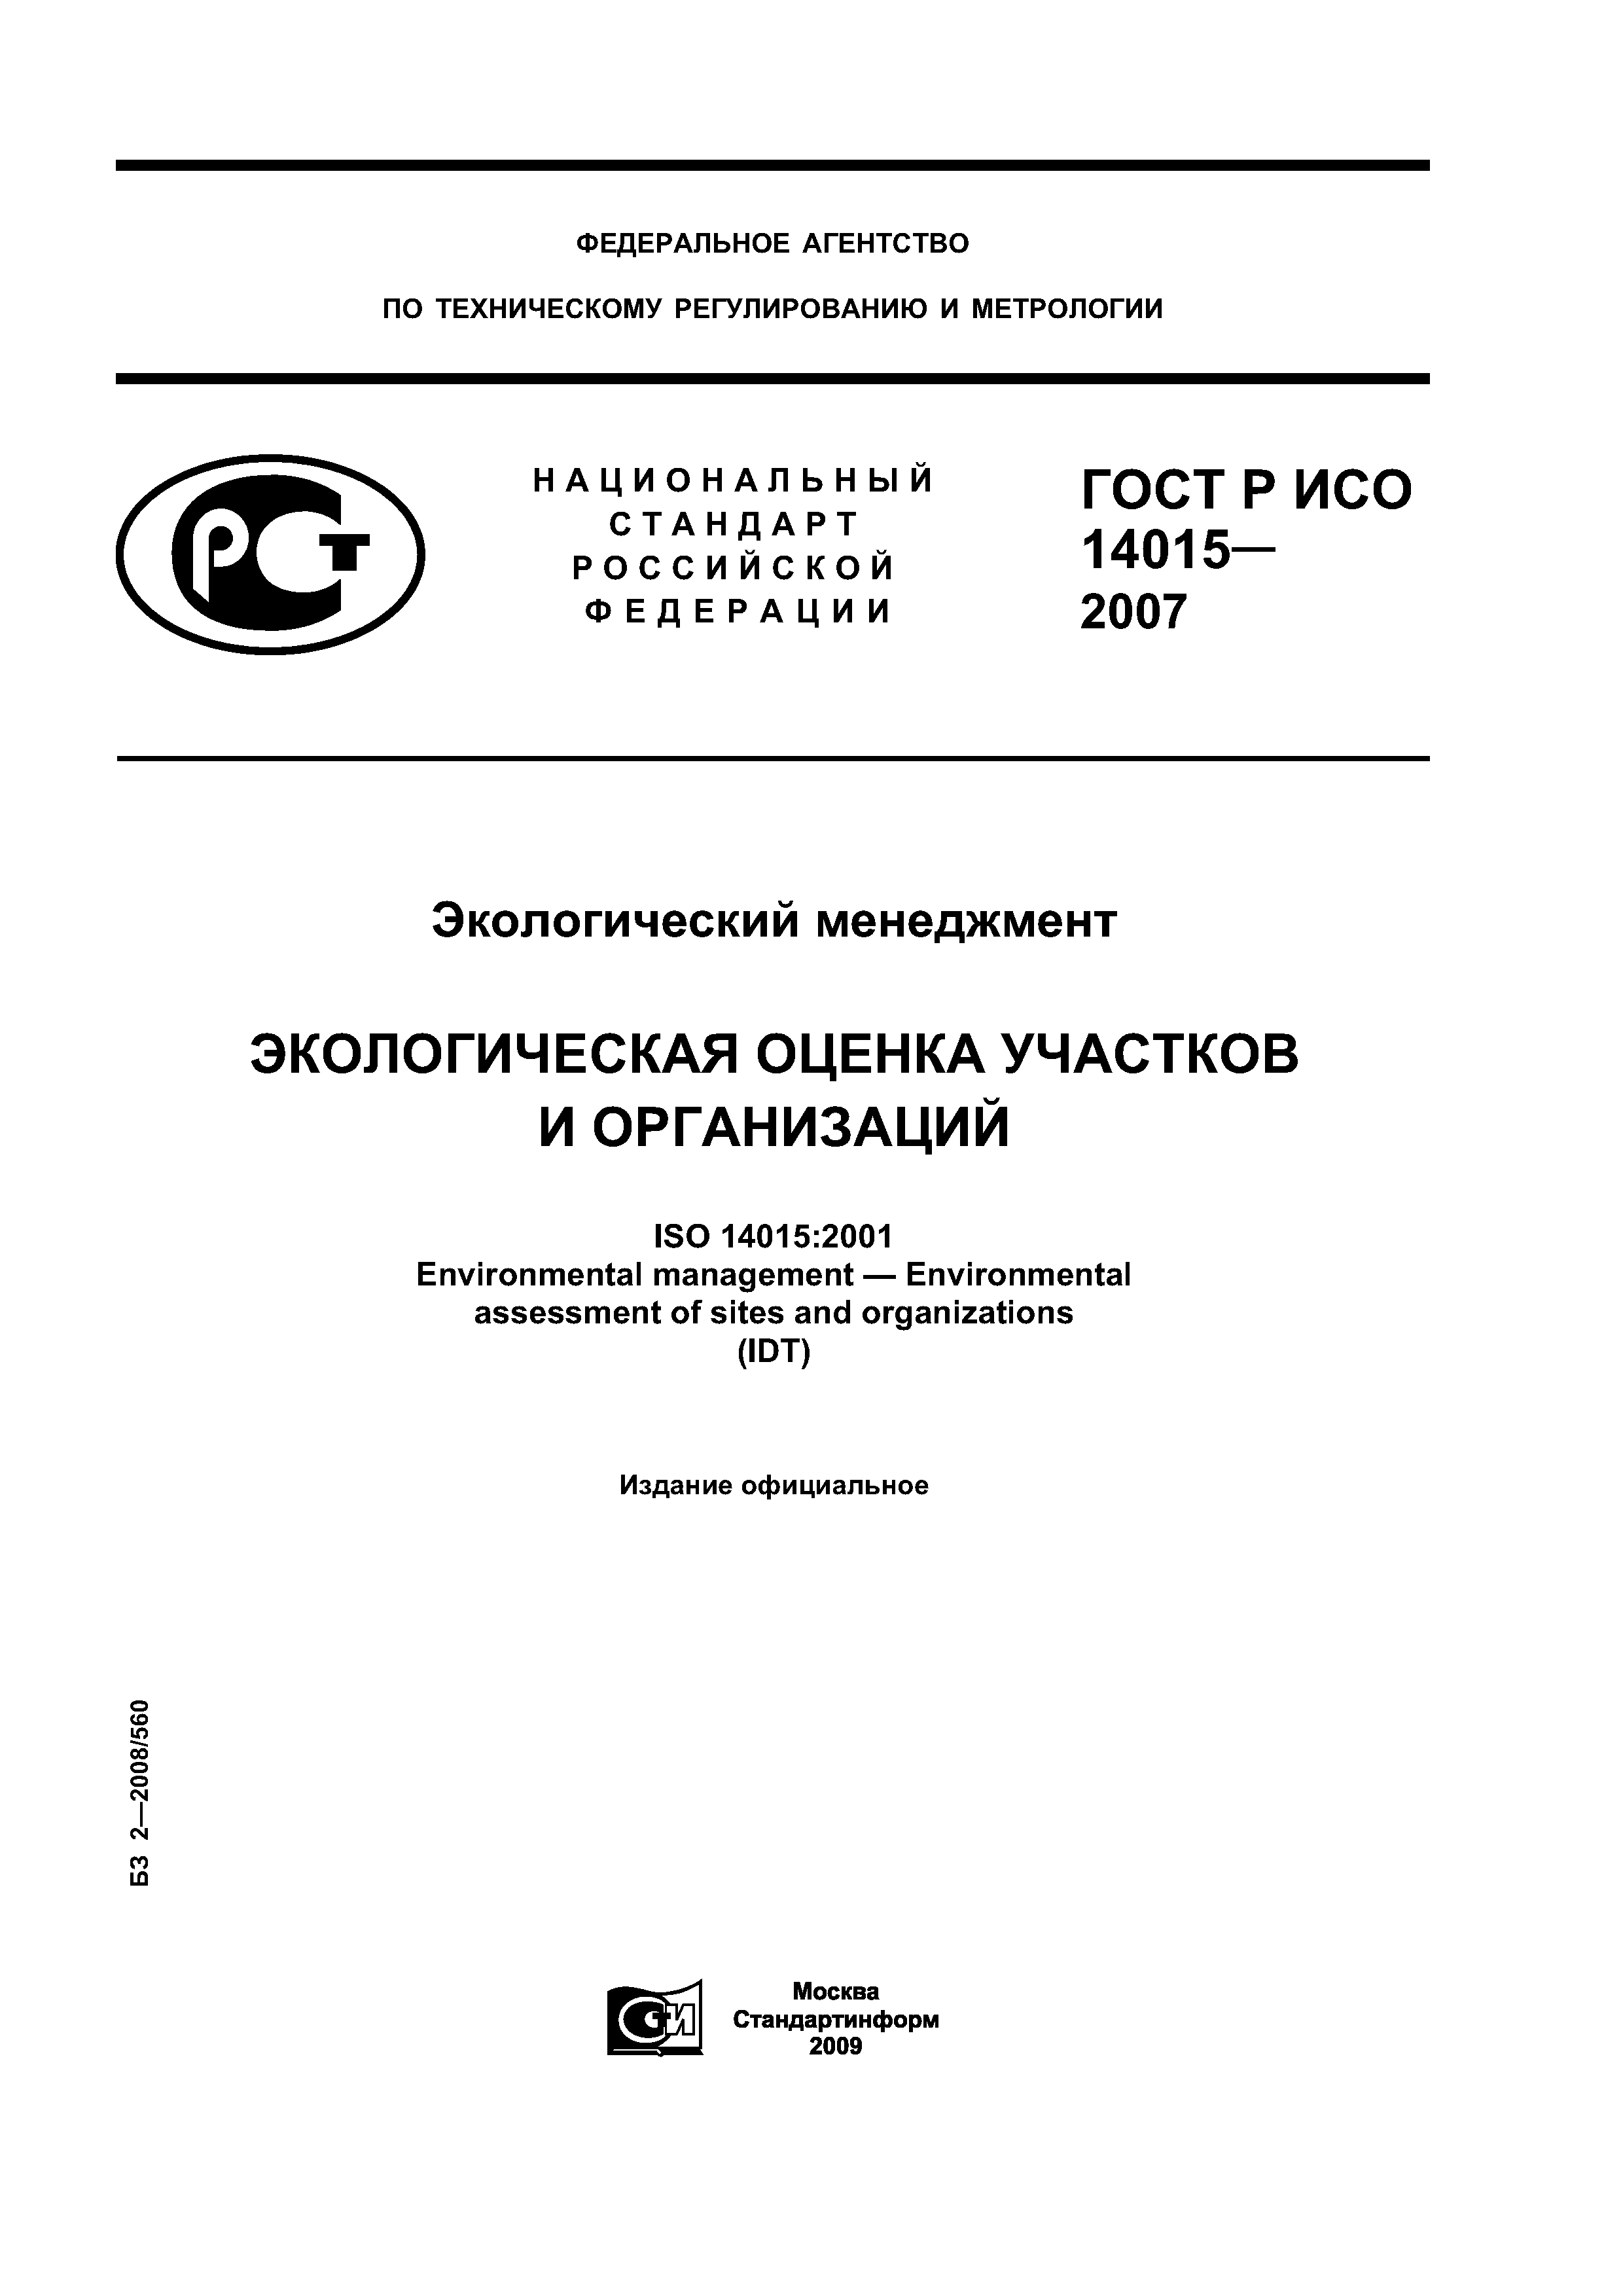 ГОСТ Р ИСО 14015-2007